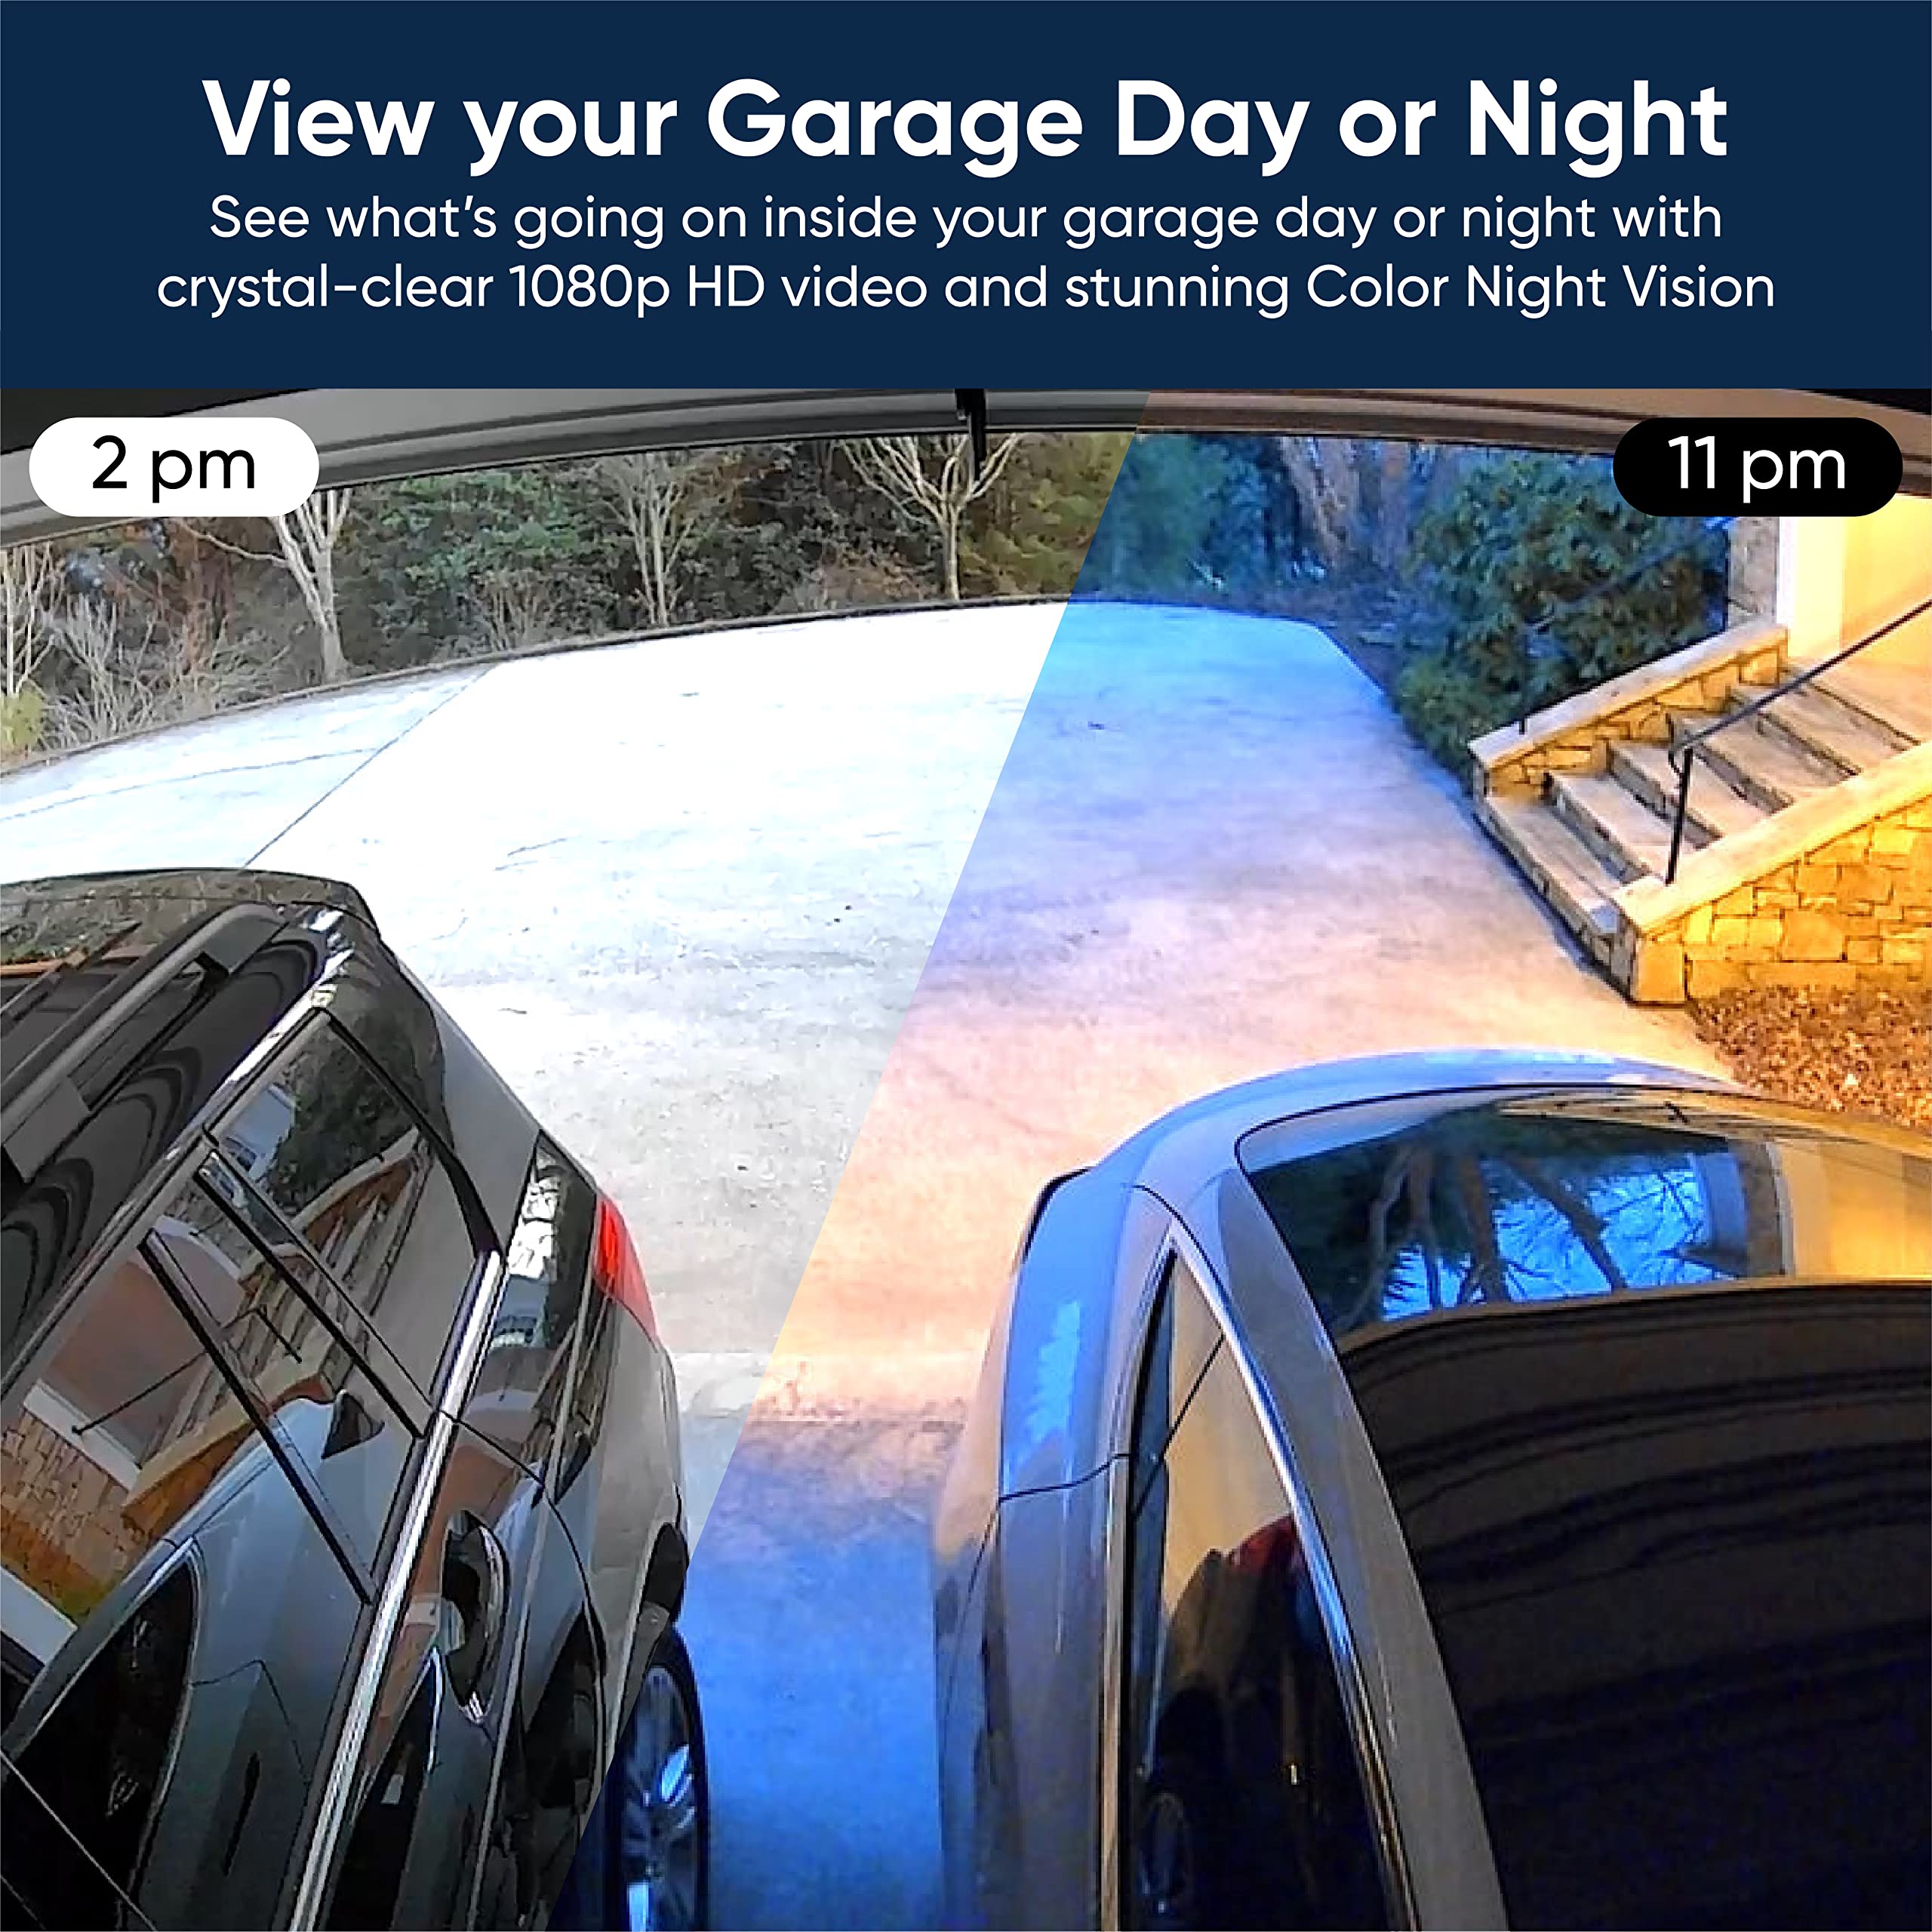 Wyze Smart Garage Door Opener w/built-in HD Video, Remotely Control Garage Door, 1080p HD Video w/Color Night Vision, Two-Way Audio